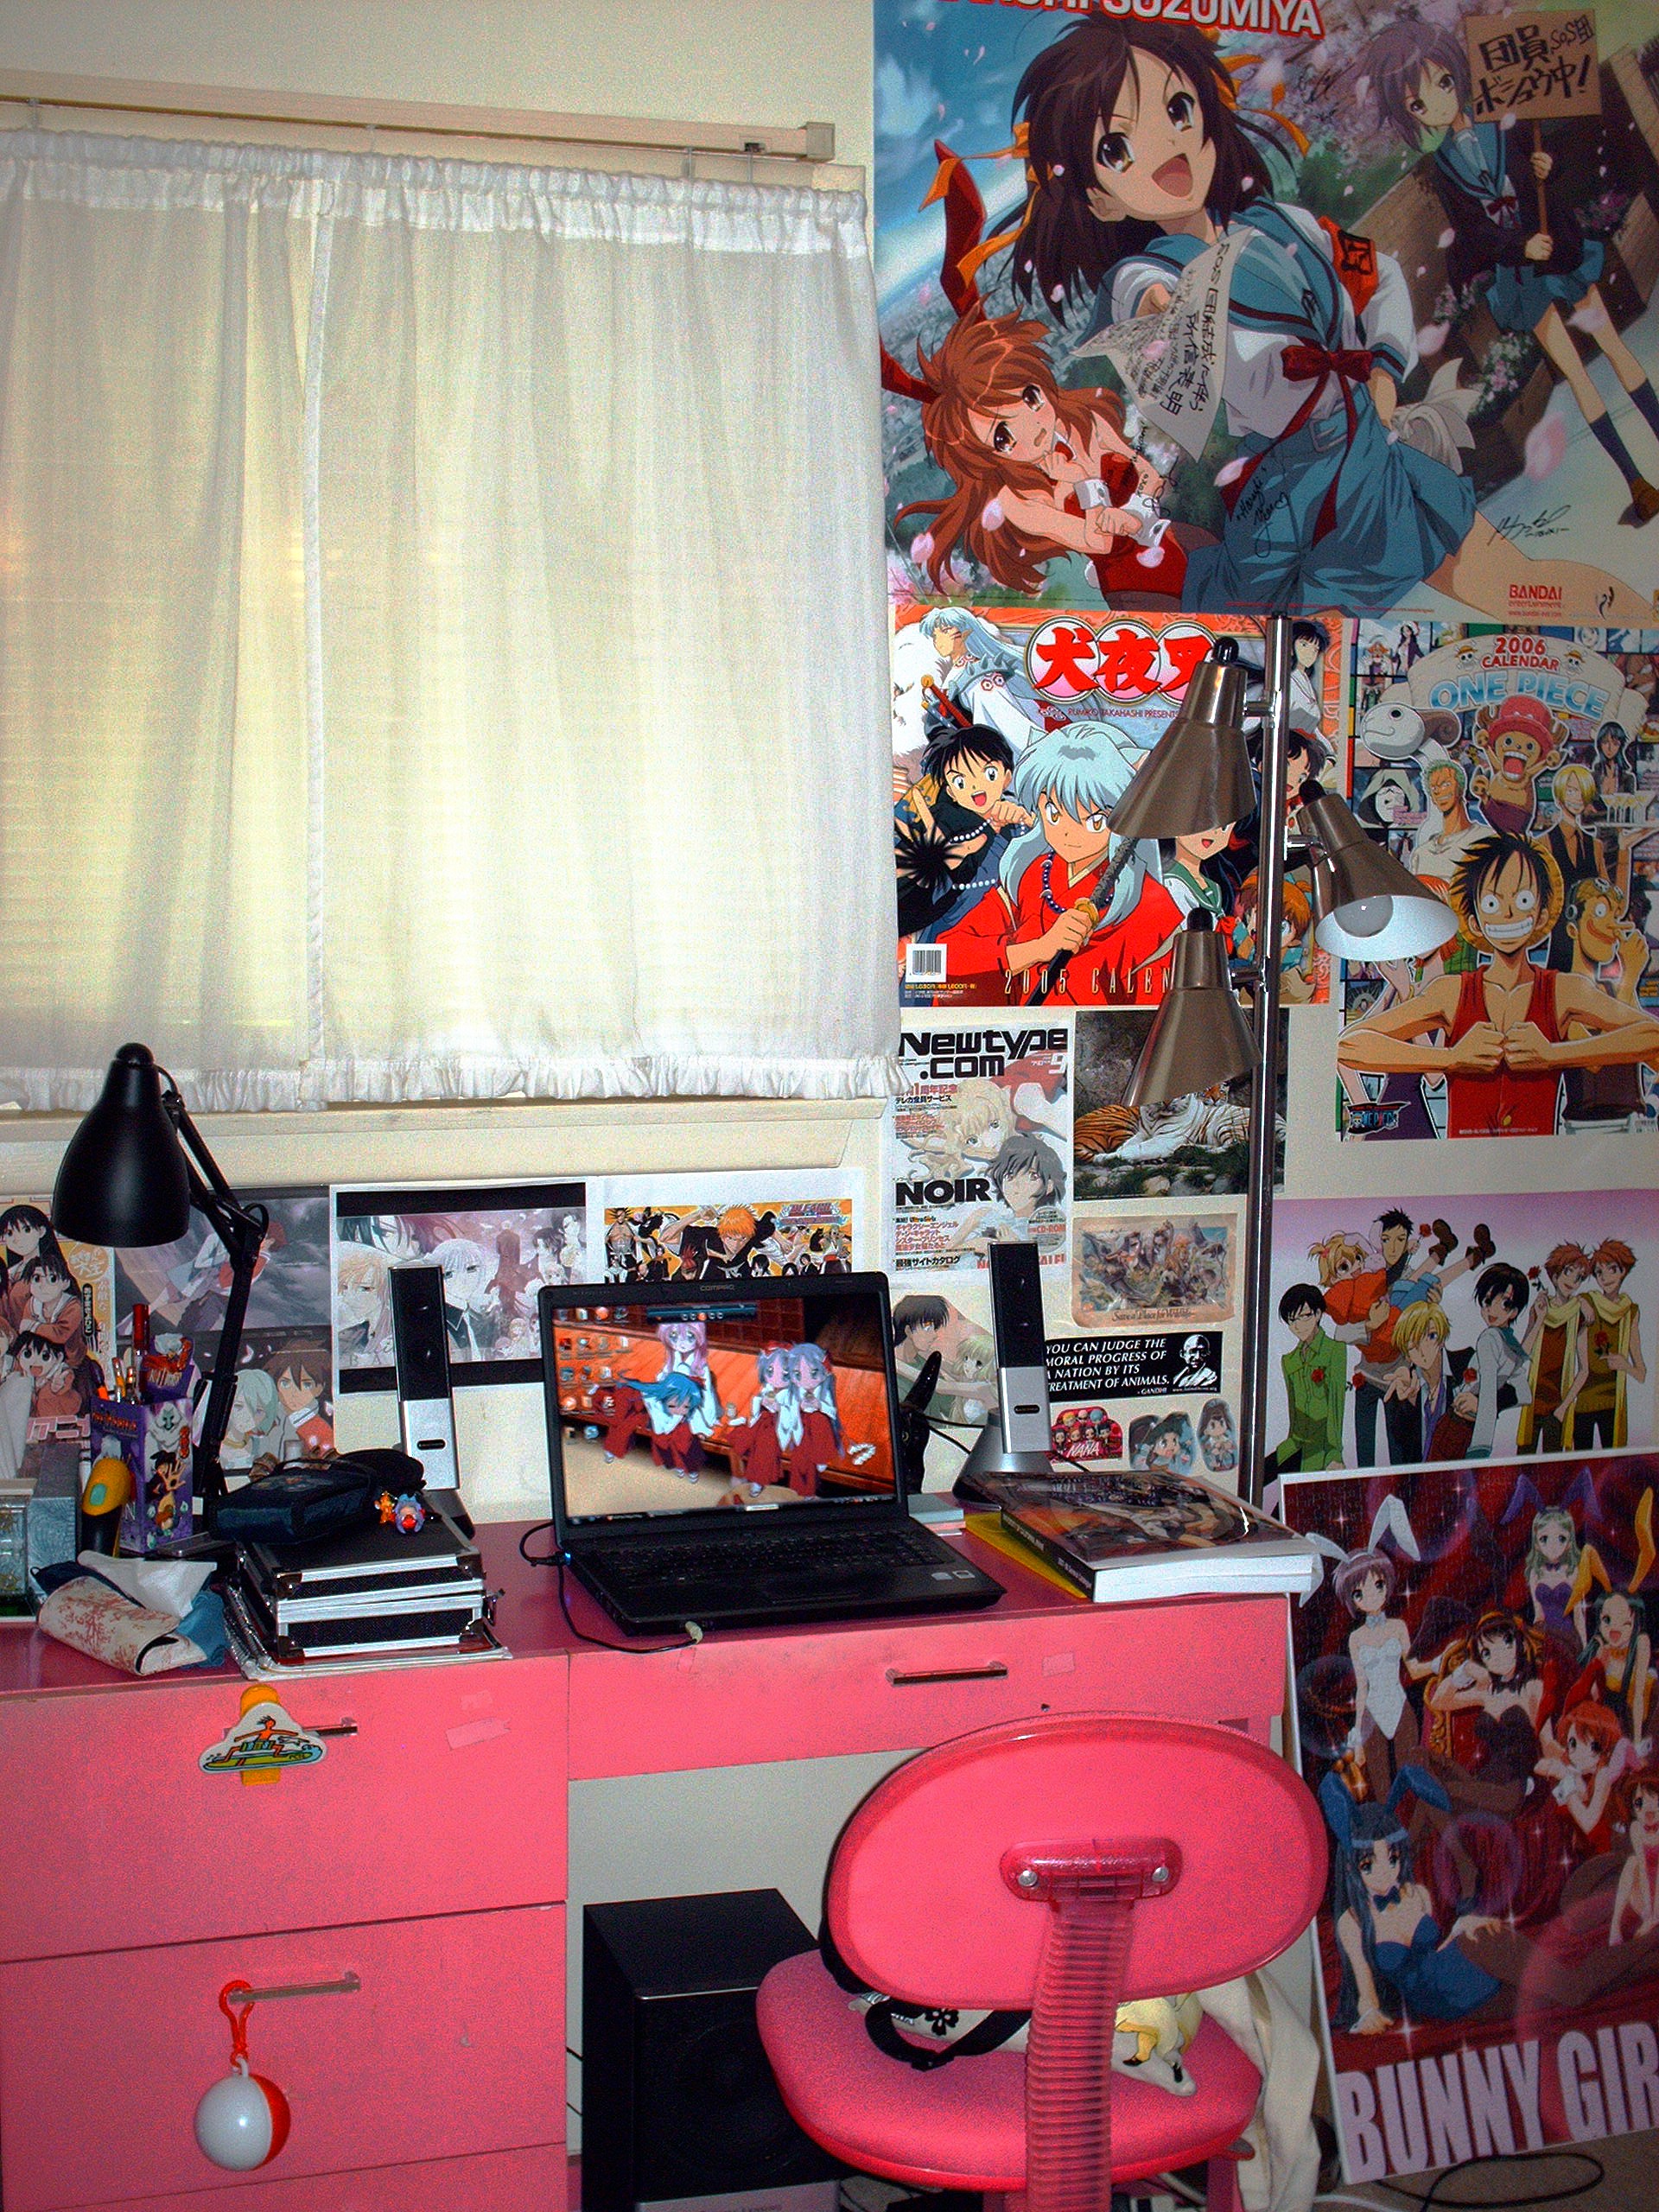 æ¯Žæ—¥ã‚¢ãƒ‹ãƒ¡å¤¢ » 私の部屋へようこそ – Welcome to my (anime covered) room